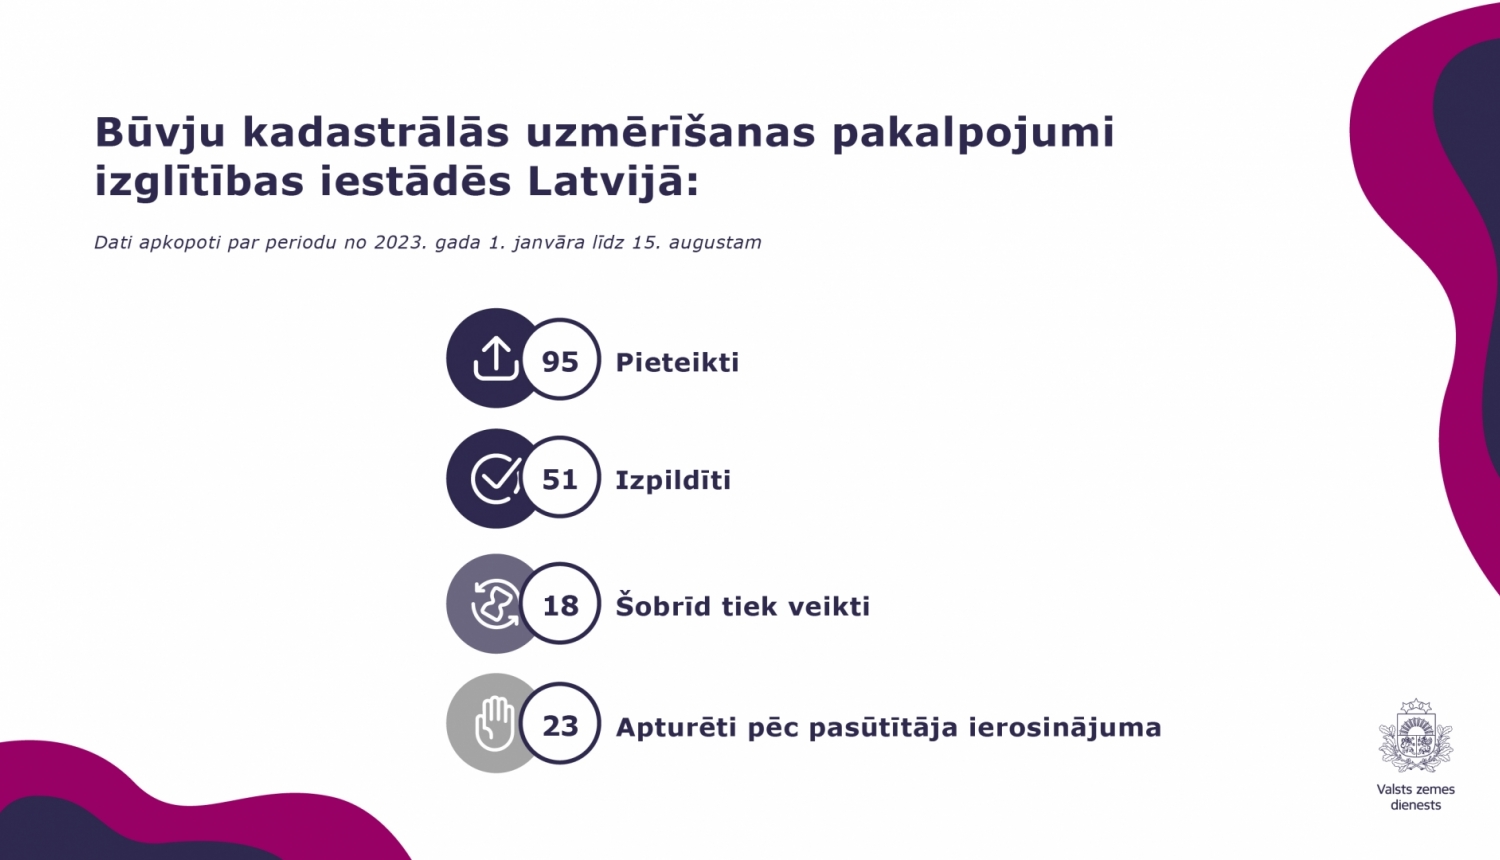 BKU pakalpojumi izglītības iestādēs Latvijā